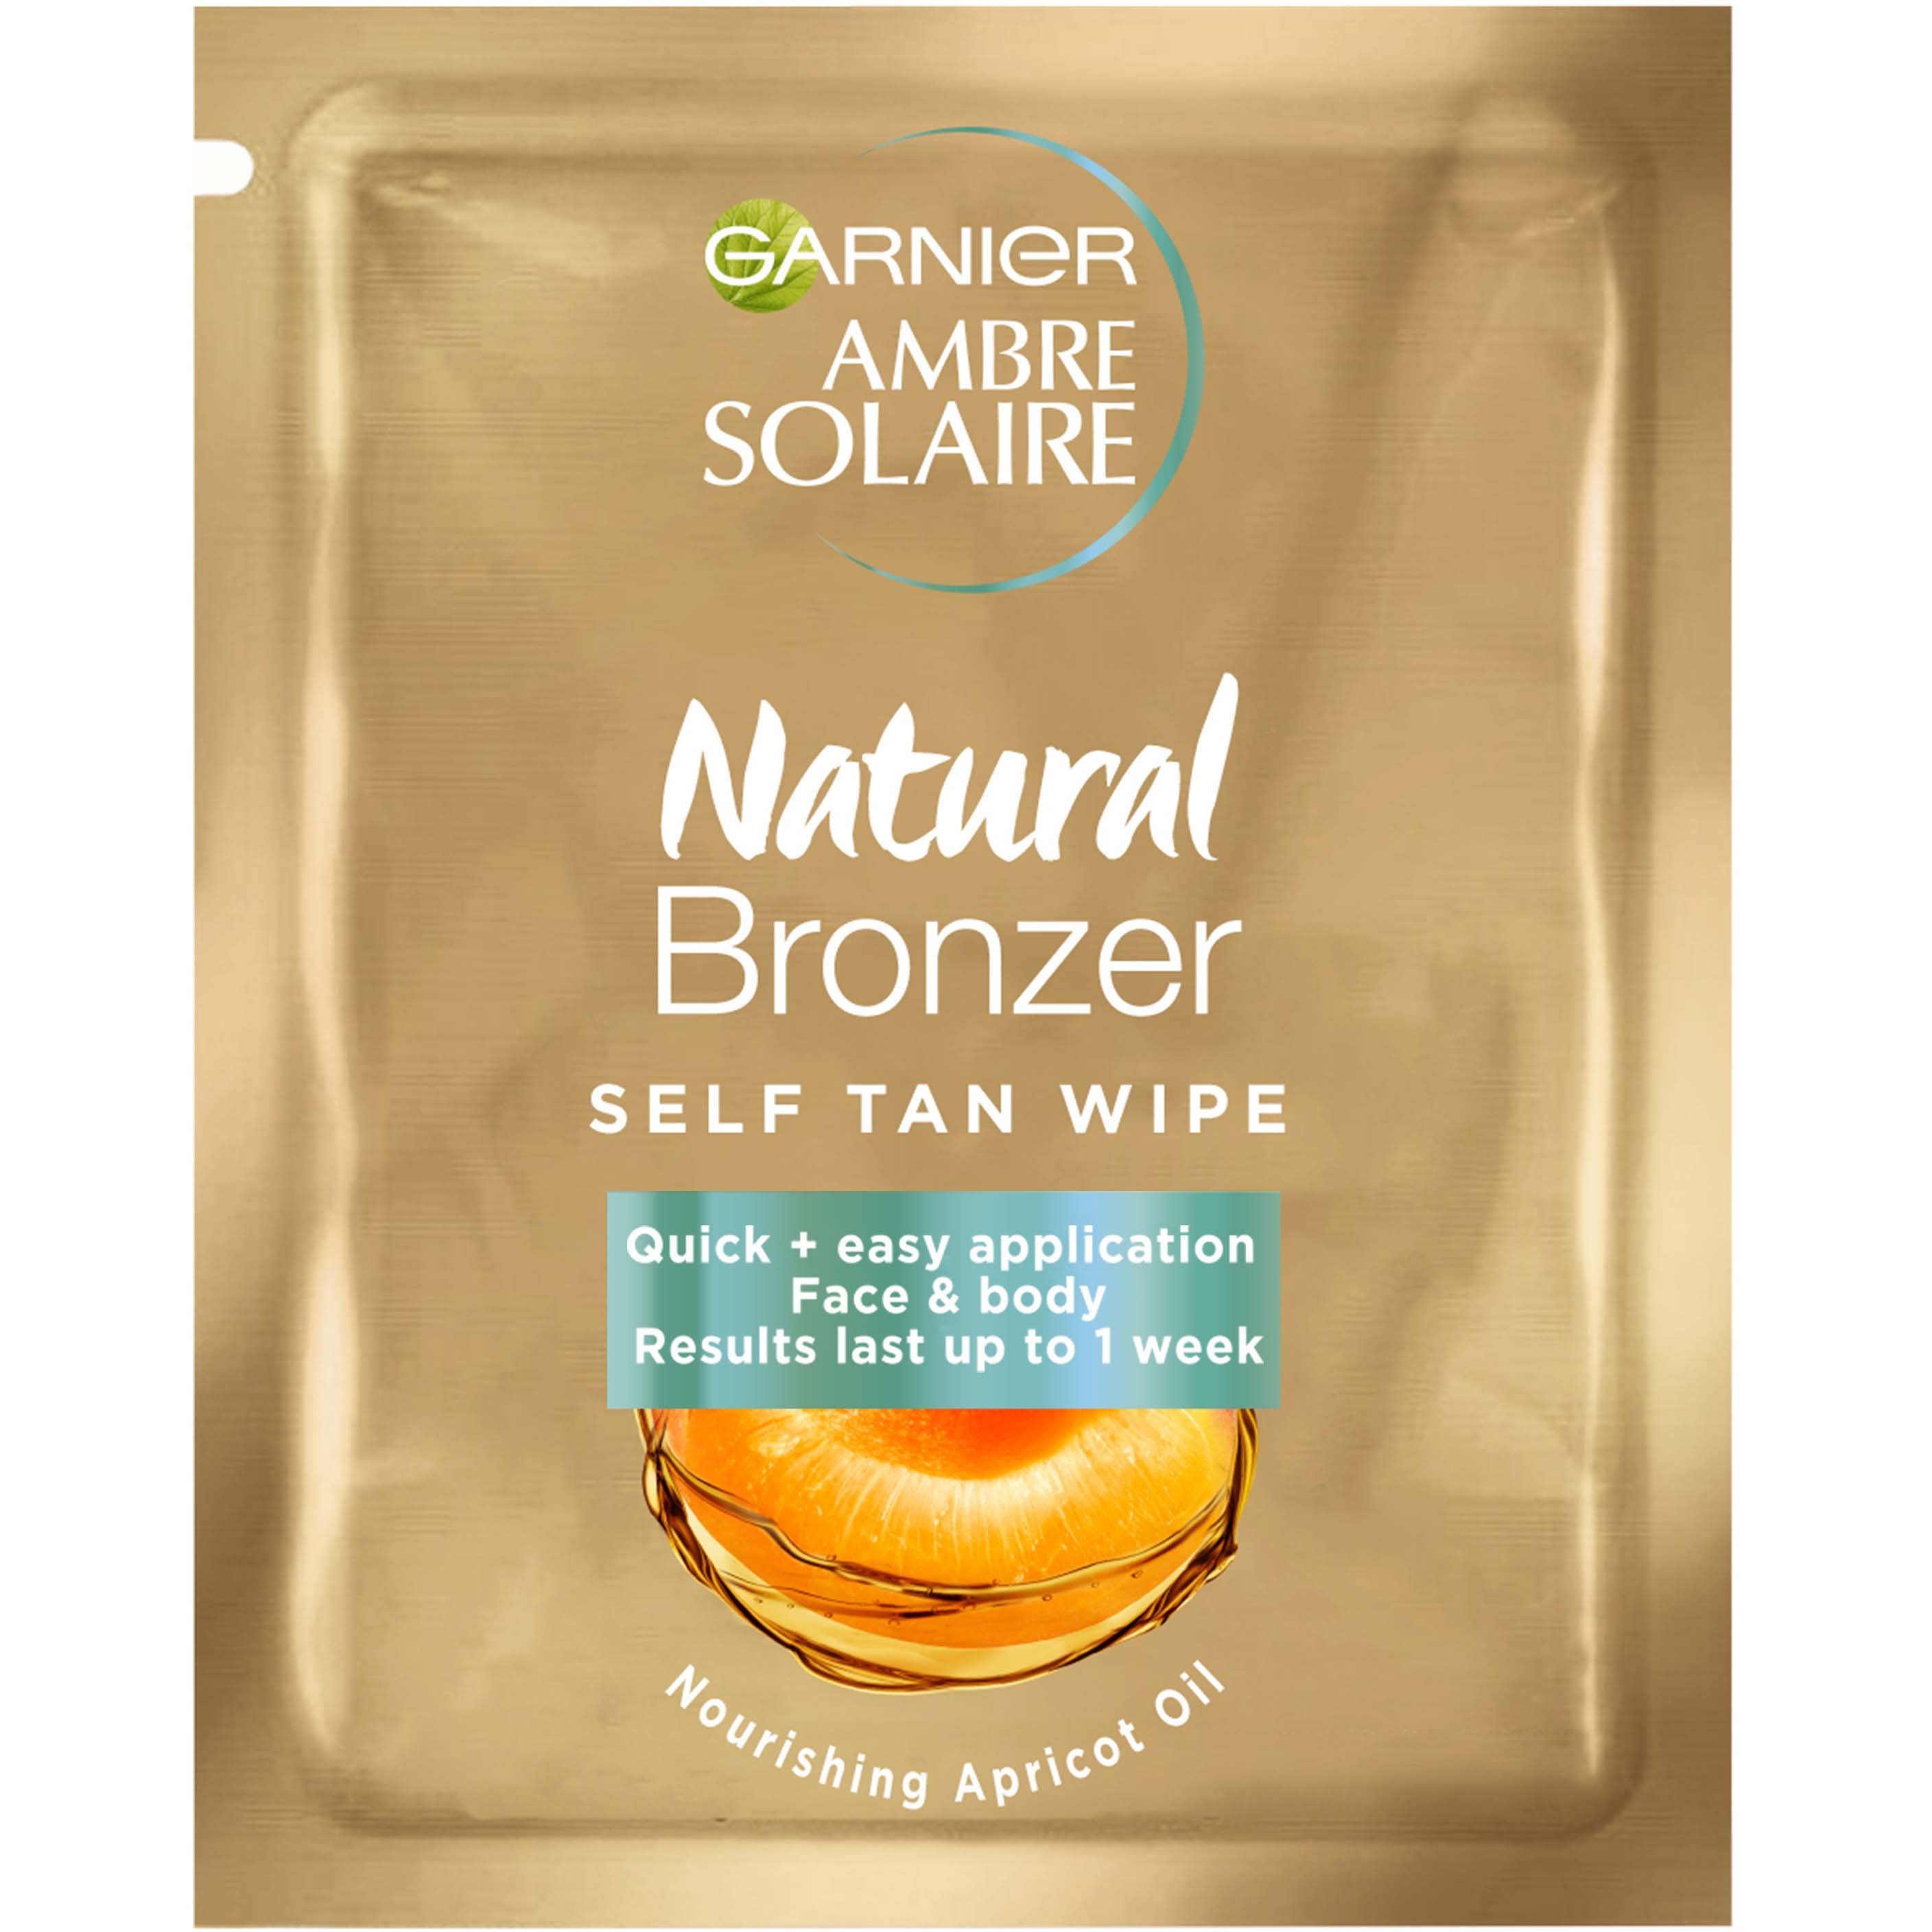 Garnier Ambre Solaire Natural Bronzer Self Tan Wipe 6 ml